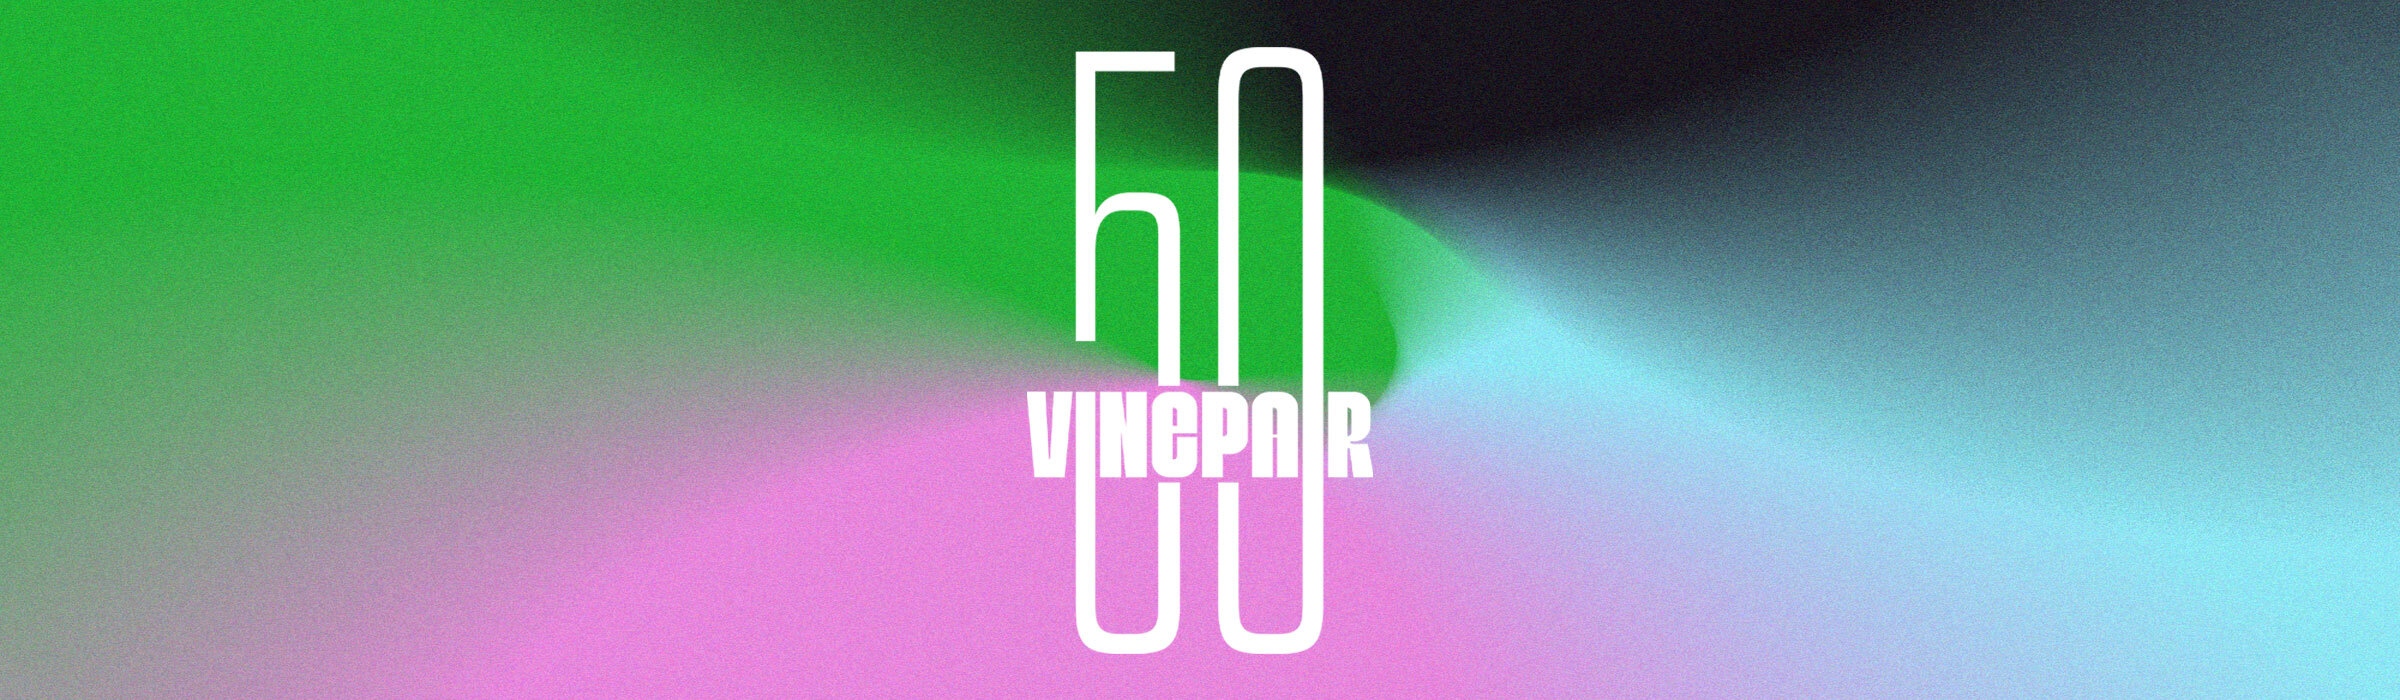 VP 50